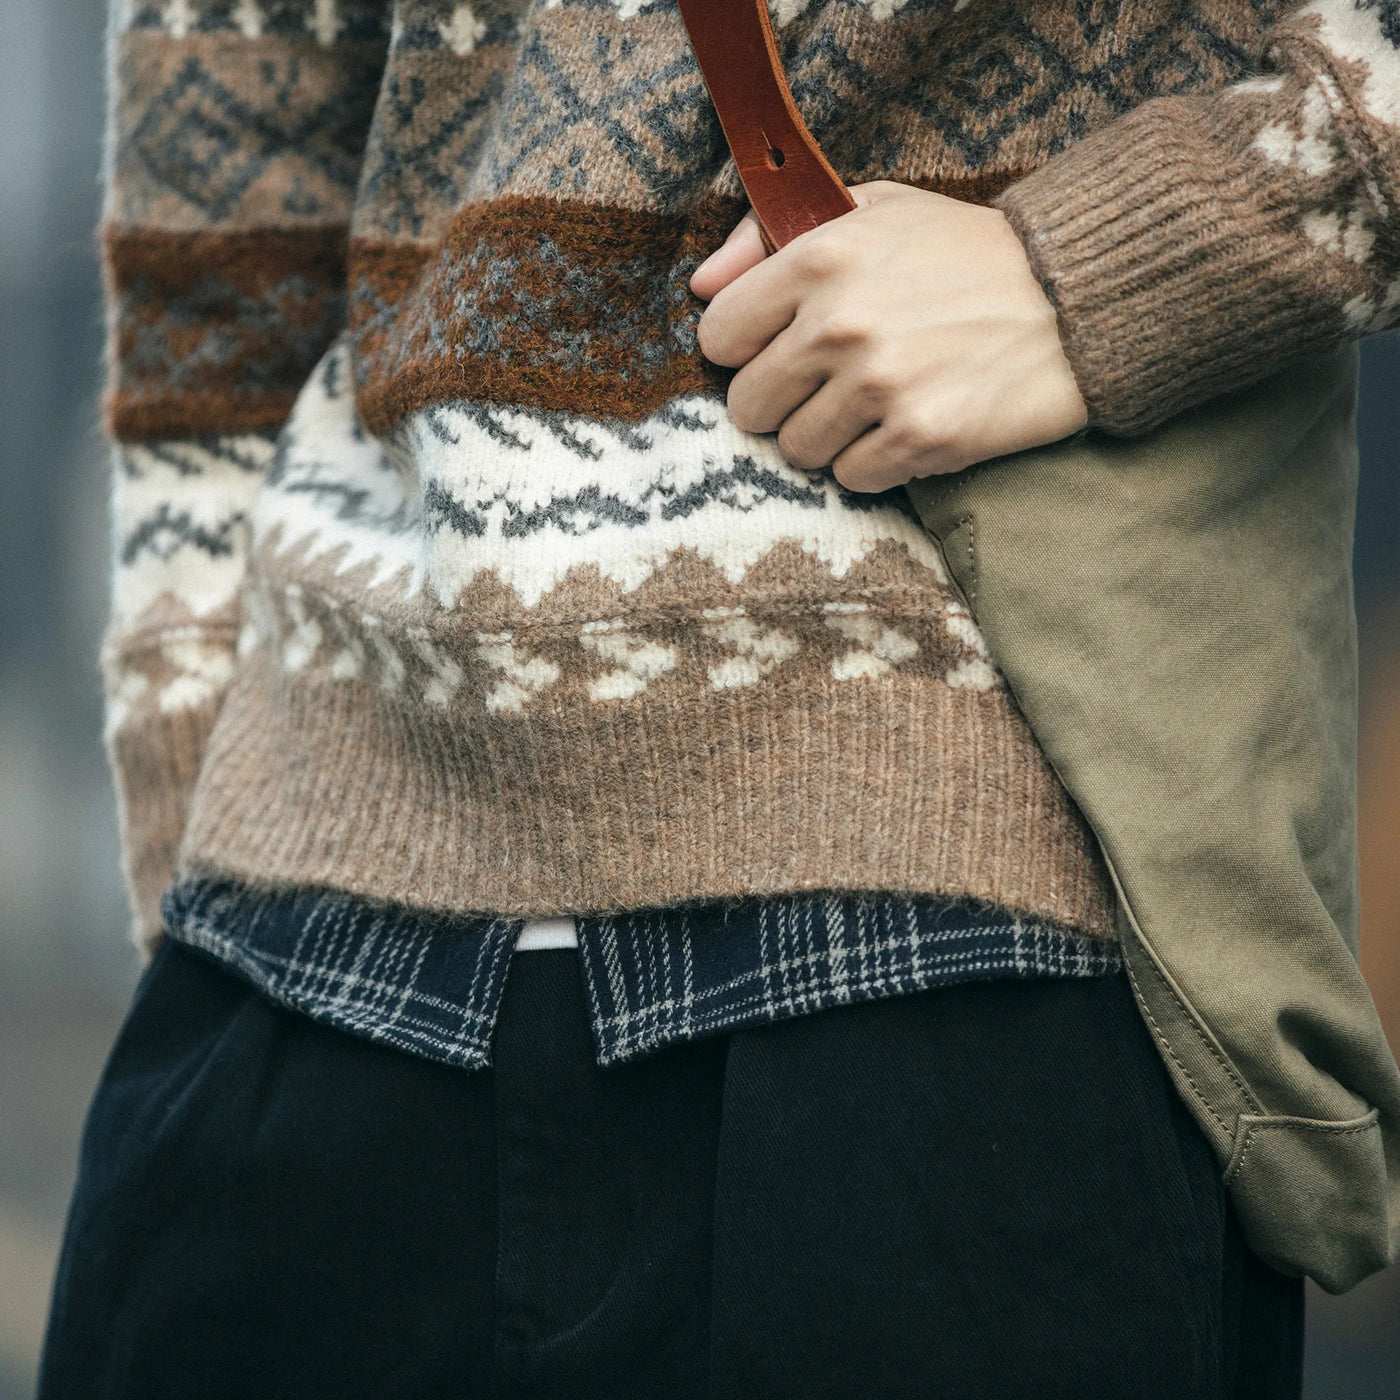 ULRICH - Ethnischer Stil Vintage Herren Kontrast Farbe lose stricken Pullover